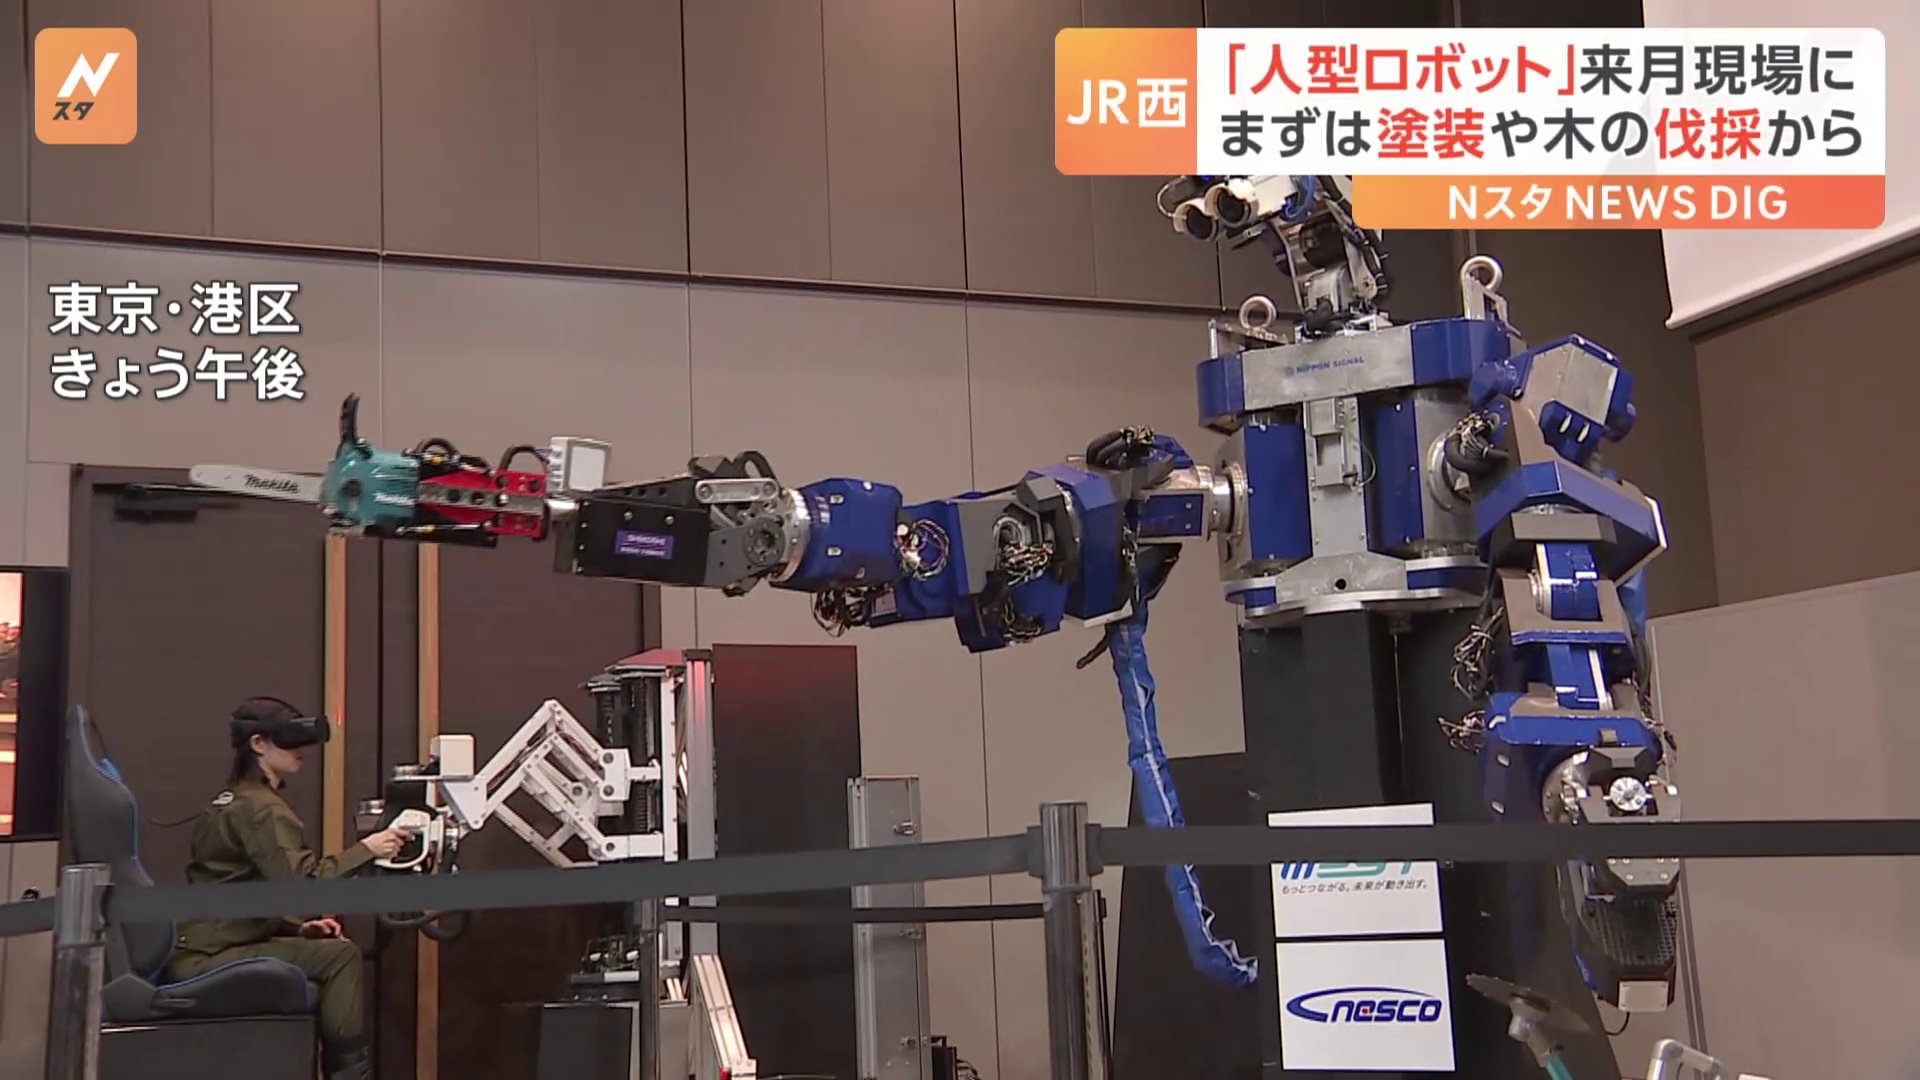 鉄道設備のメンテナンスなどを行う「人型ロボット」 7月から現場に導入　JR西日本